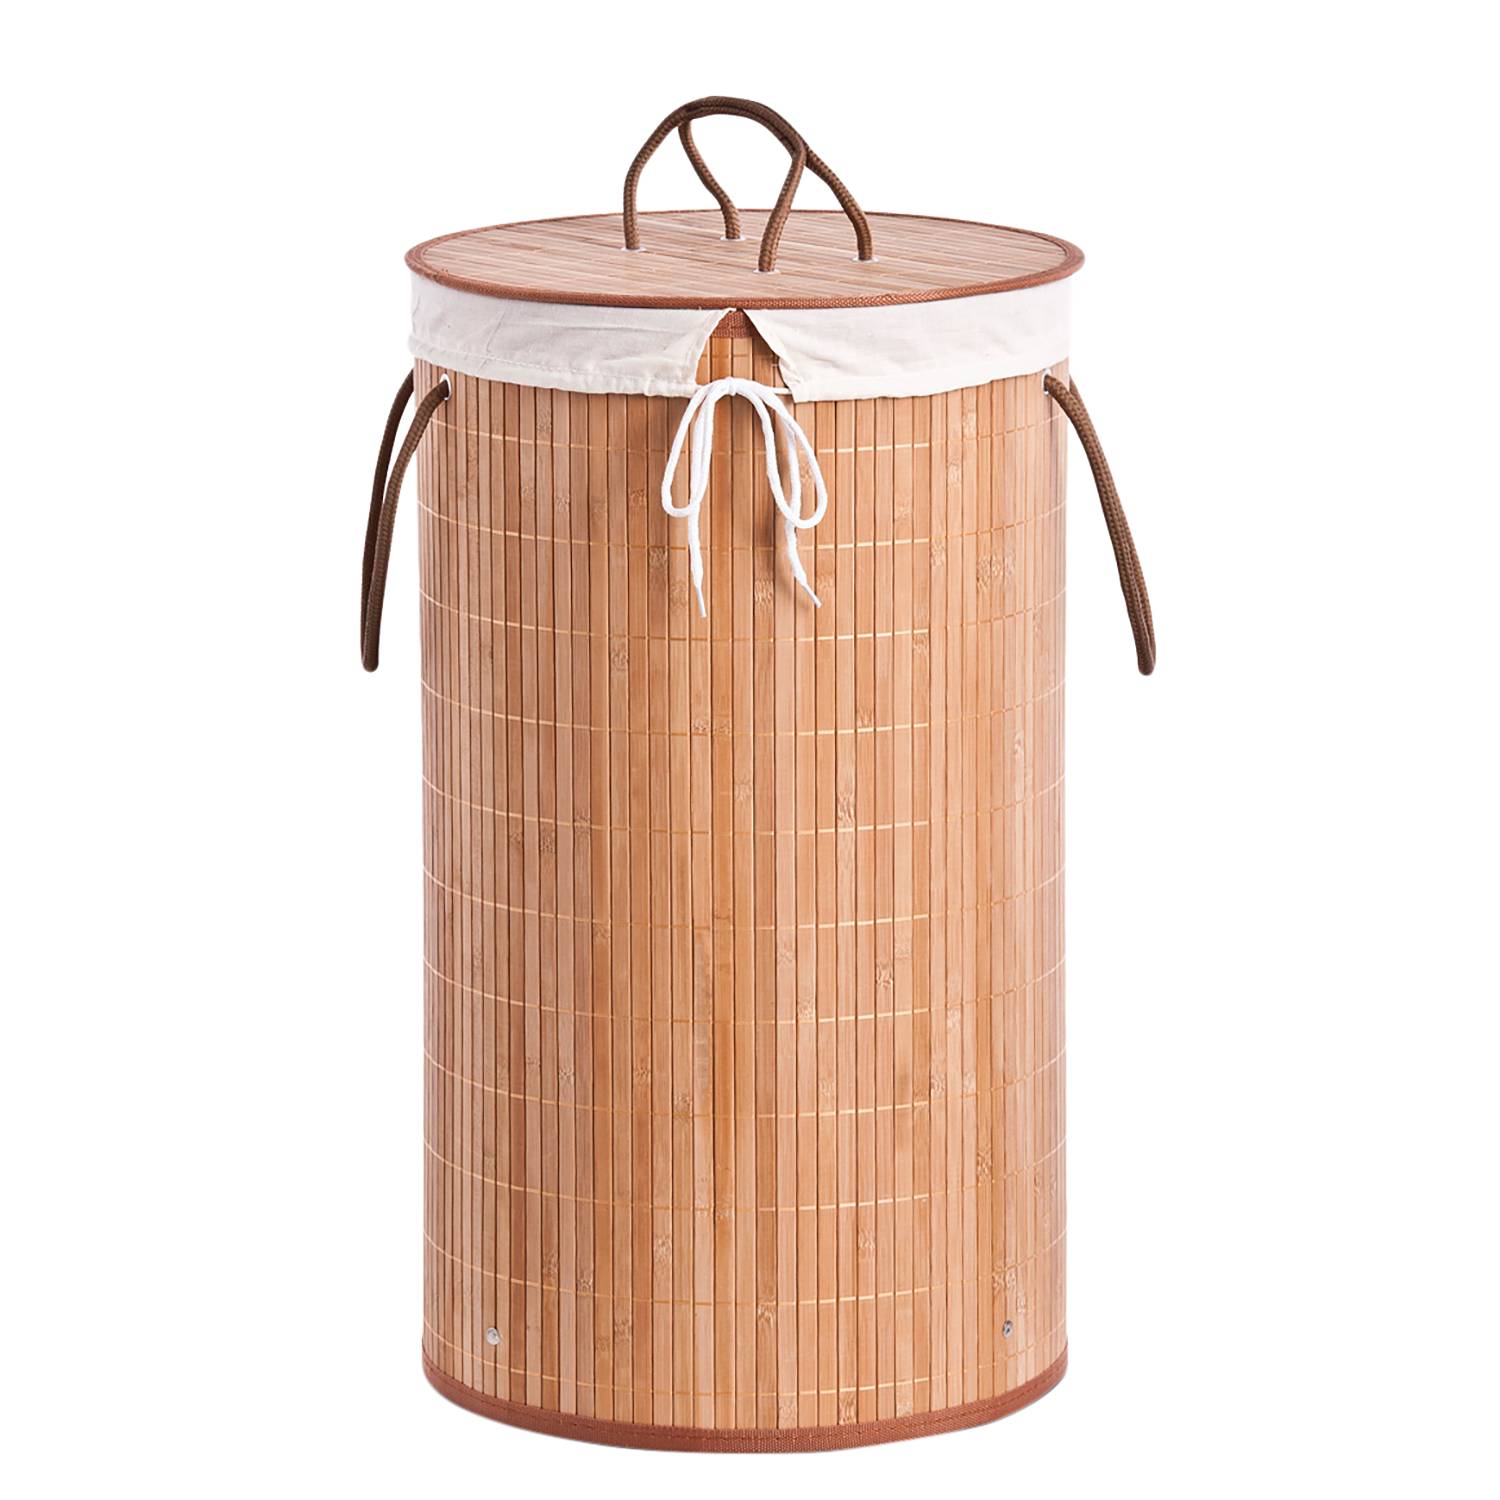 Wäschesammler Bamboo von Zeller